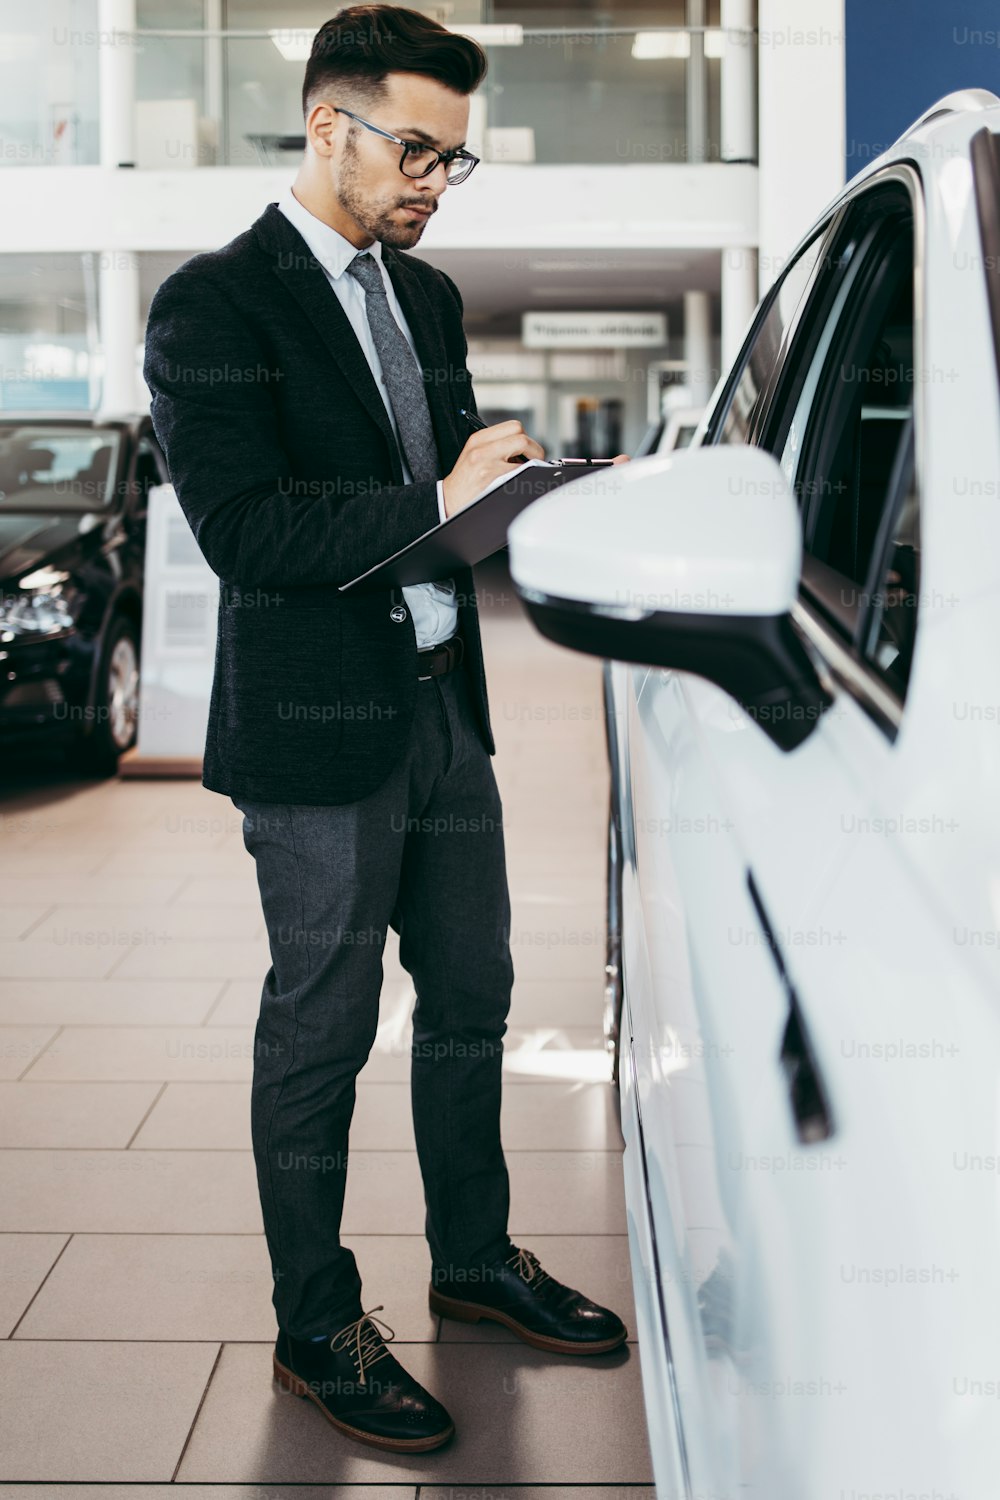 Venditore di auto che lavora in showroom e controllo di qualità dei dettagli dell'auto per l'ultima volta prima che arrivi l'acquirente.